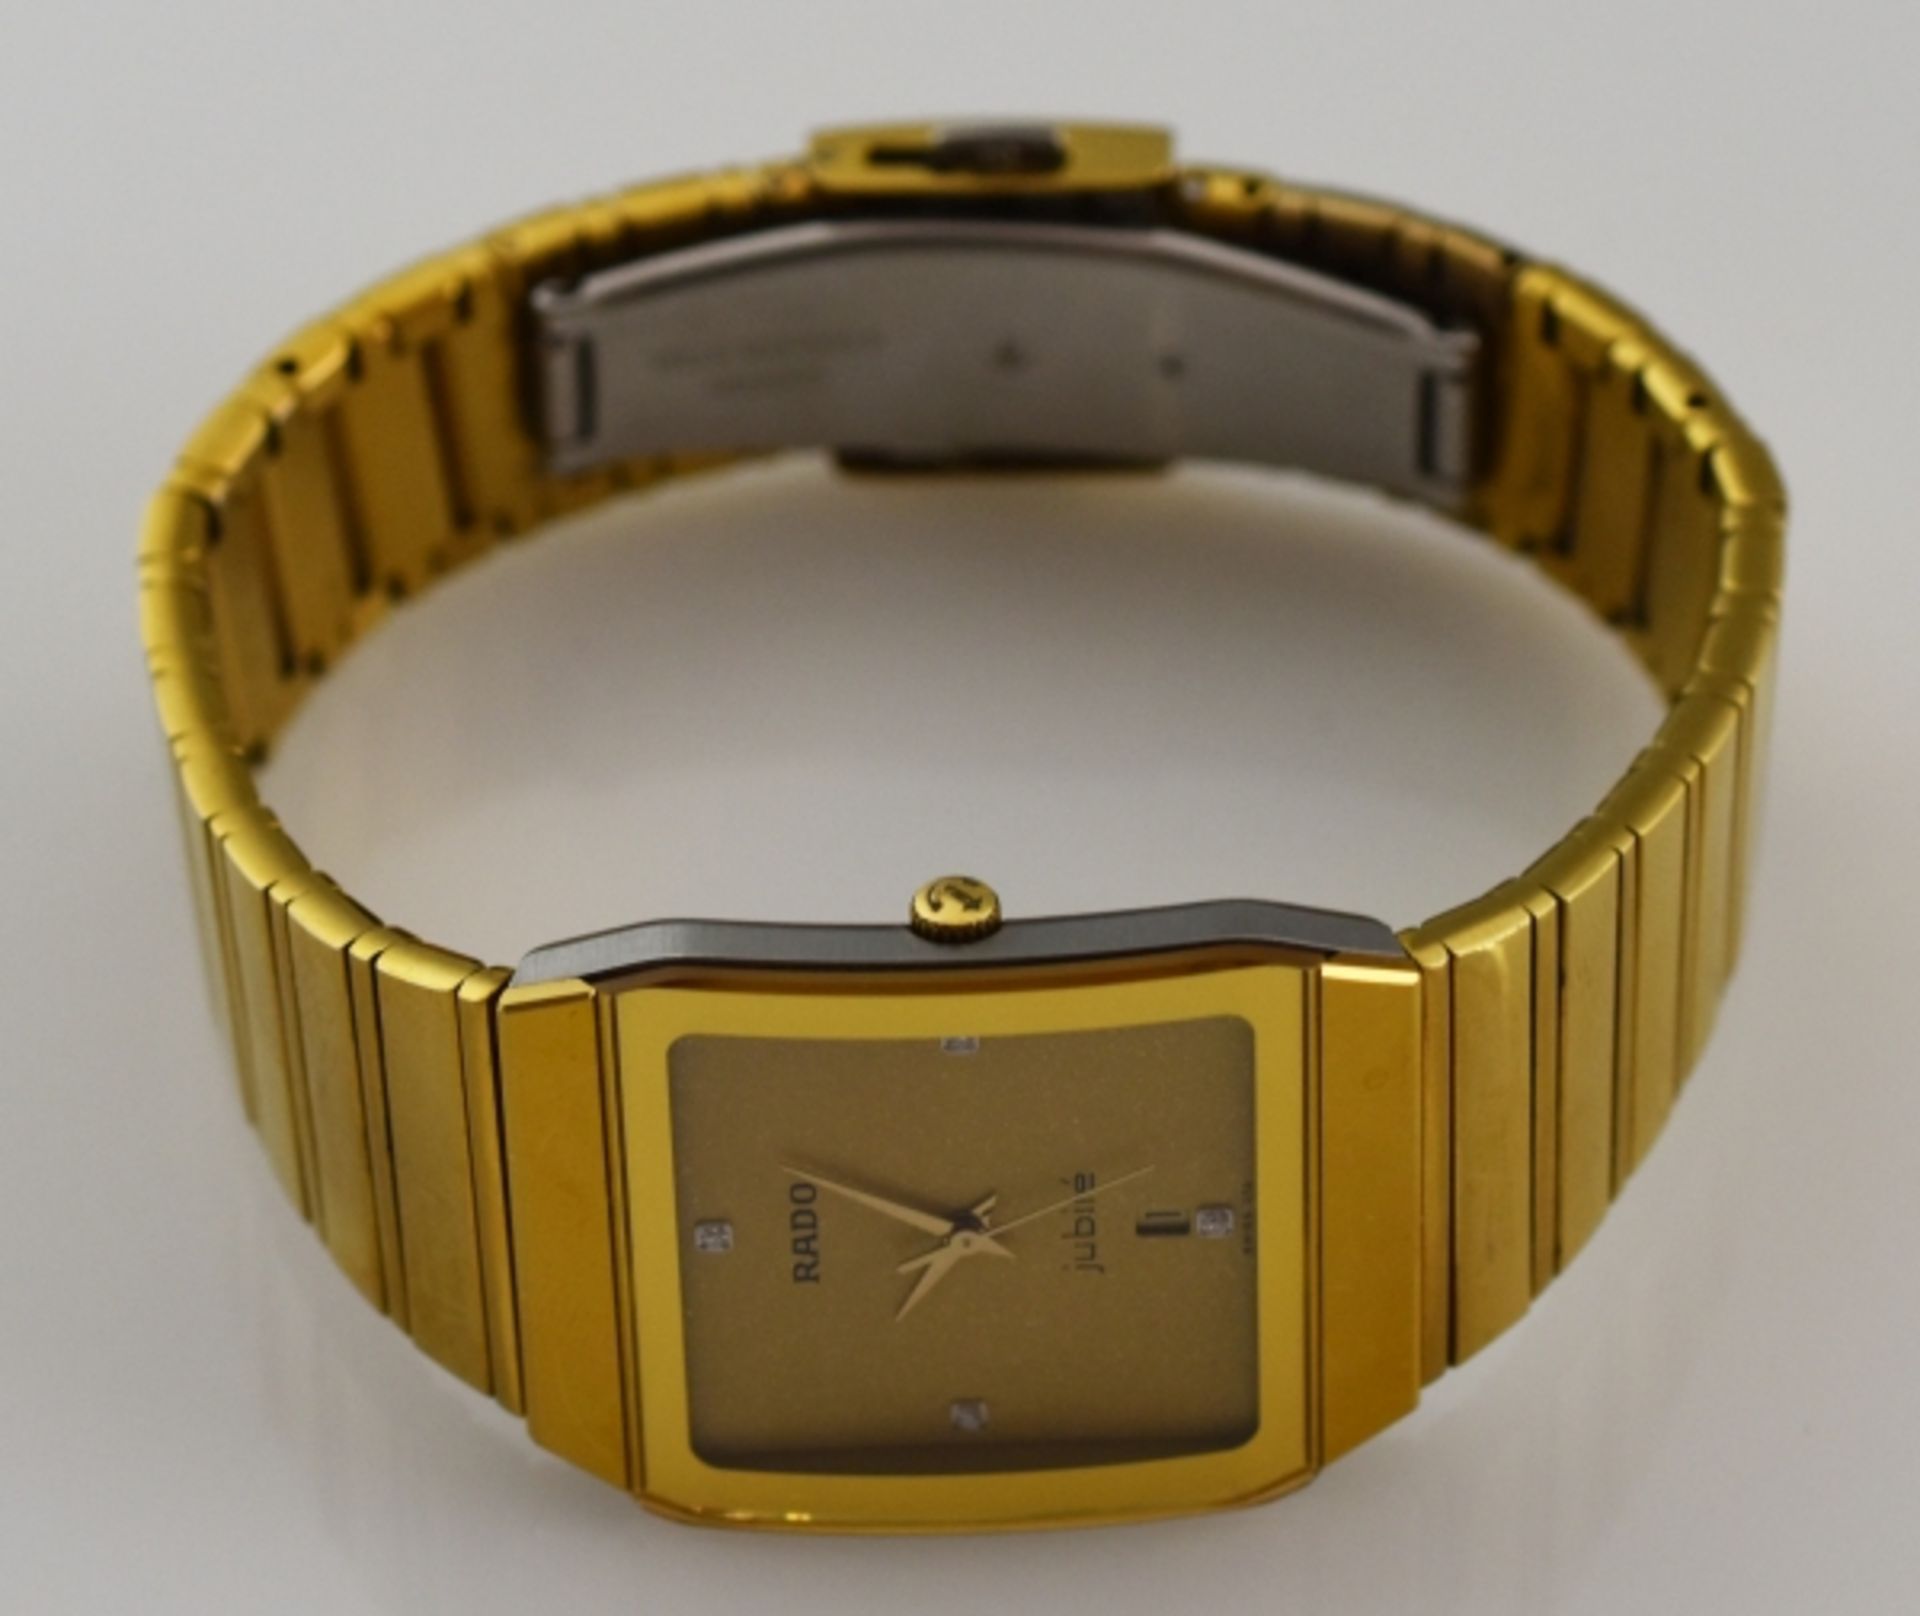 ARMBANDUHR RADO Jubilé, Quartz, rechteckiges Gehäuse mit passendem Armband, vergoldet, - Bild 2 aus 3